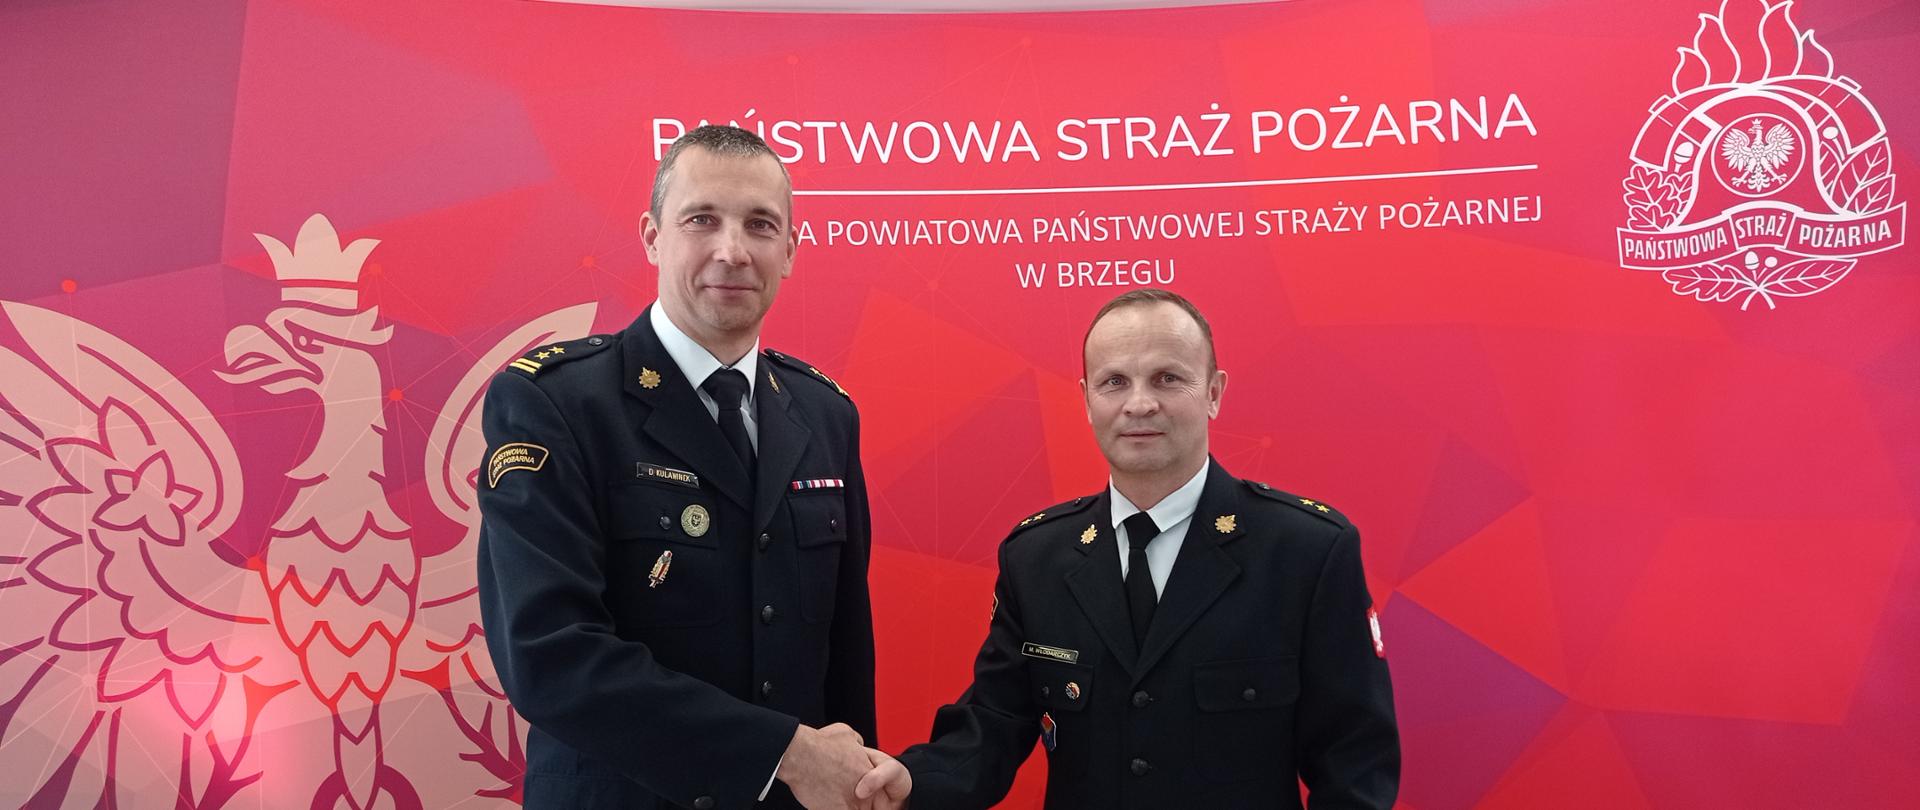 Awans na wyższe stanowisko służbowe - gratulacje od Komendanta Powiatowego dla mł.kp. Włodarczyka